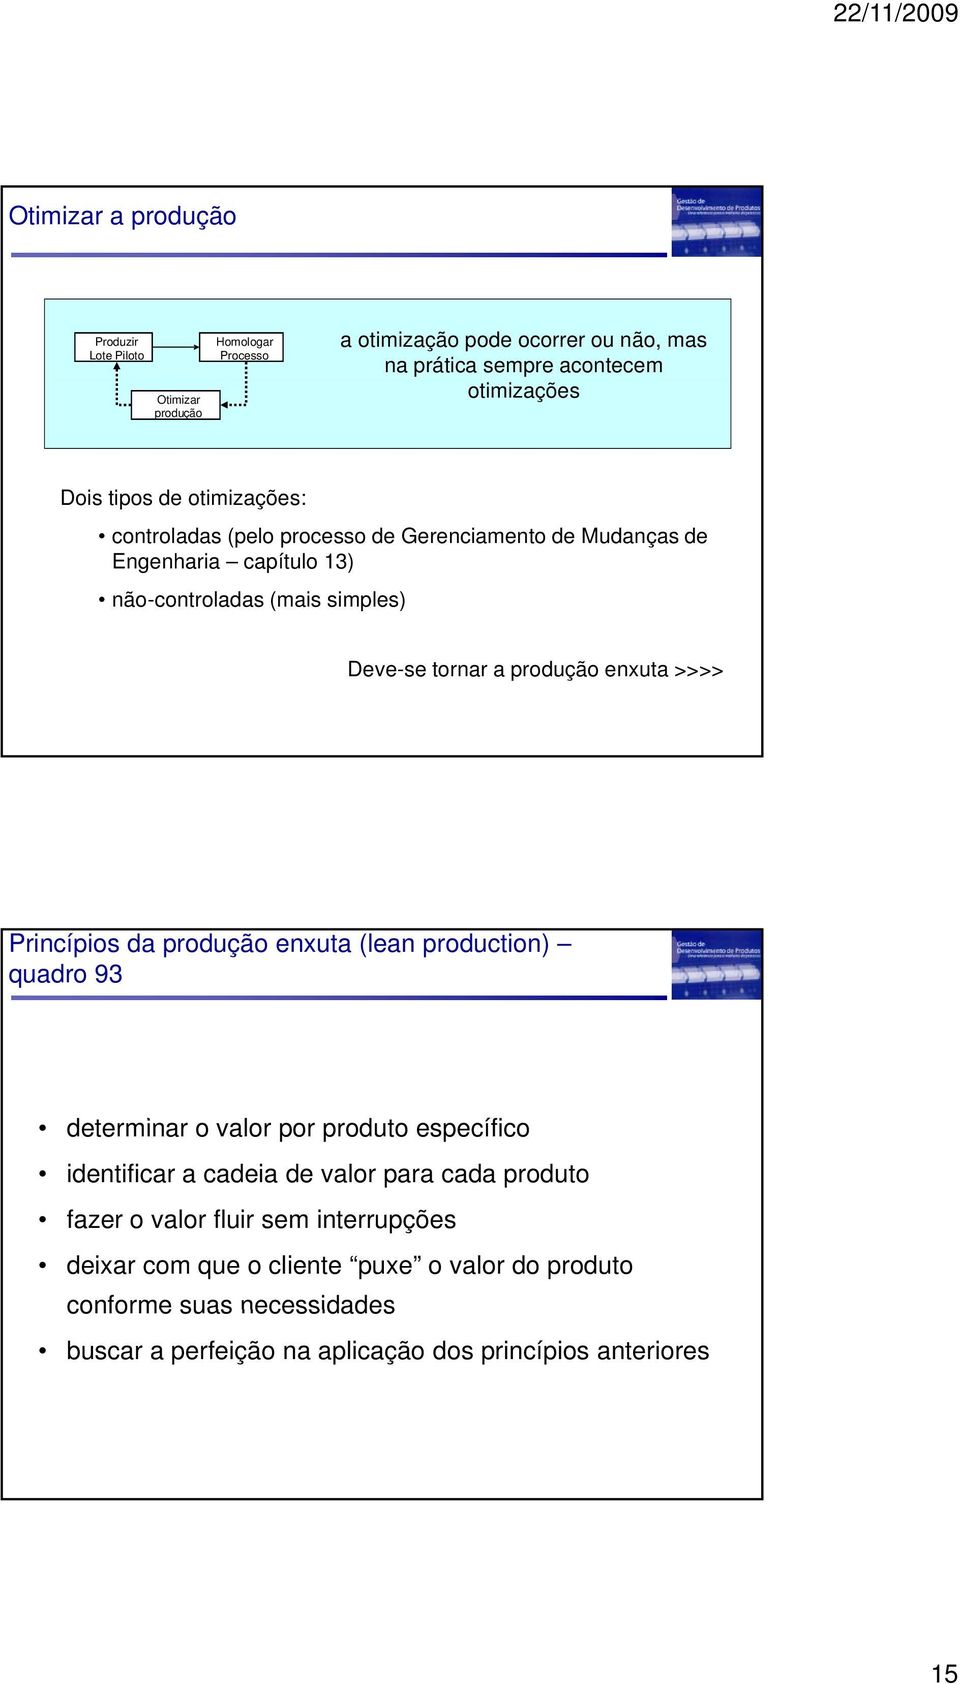 enxuta >>>> Princípios da produção enxuta (lean production) quadro 93 determinar o valor por produto específico identificar a cadeia de valor para cada produto